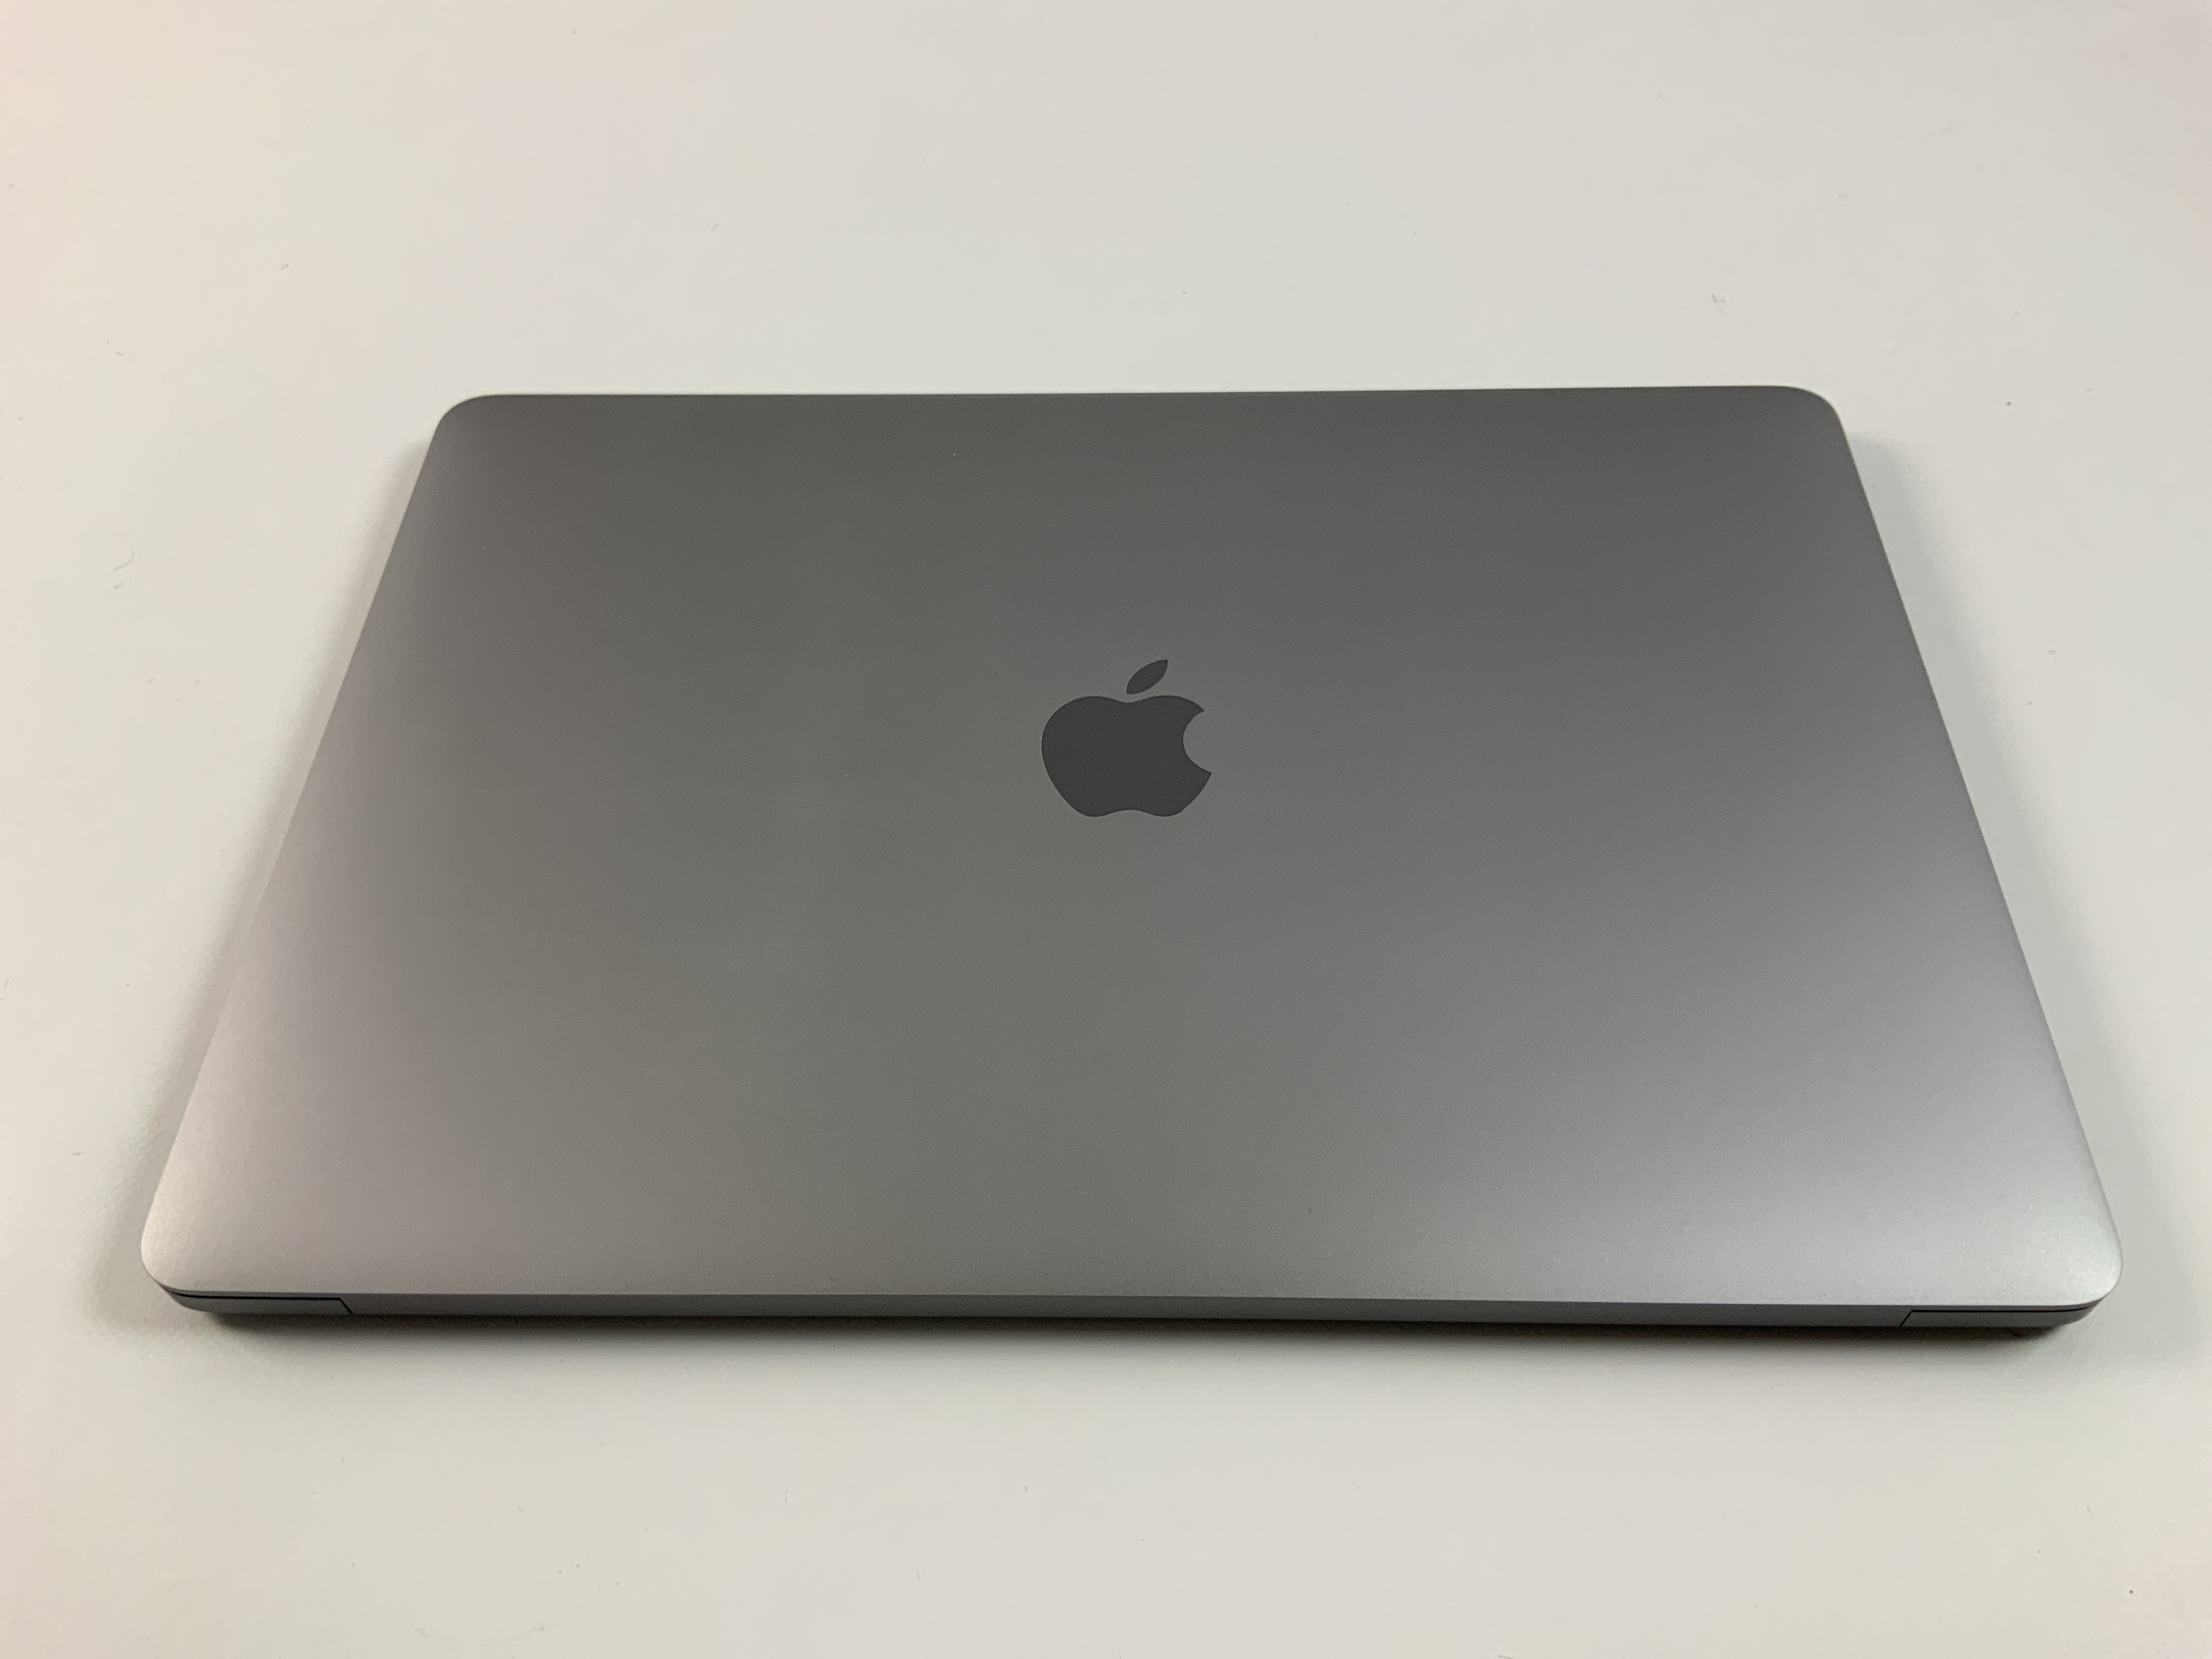 MacBook Pro 13" 4TBT Mid 2019 (Intel Quad-Core i7 2.8 GHz 16 GB RAM 256 GB SSD), Space Gray, Intel Quad-Core i7 2.8 GHz, 16 GB RAM, 256 GB SSD, immagine 2